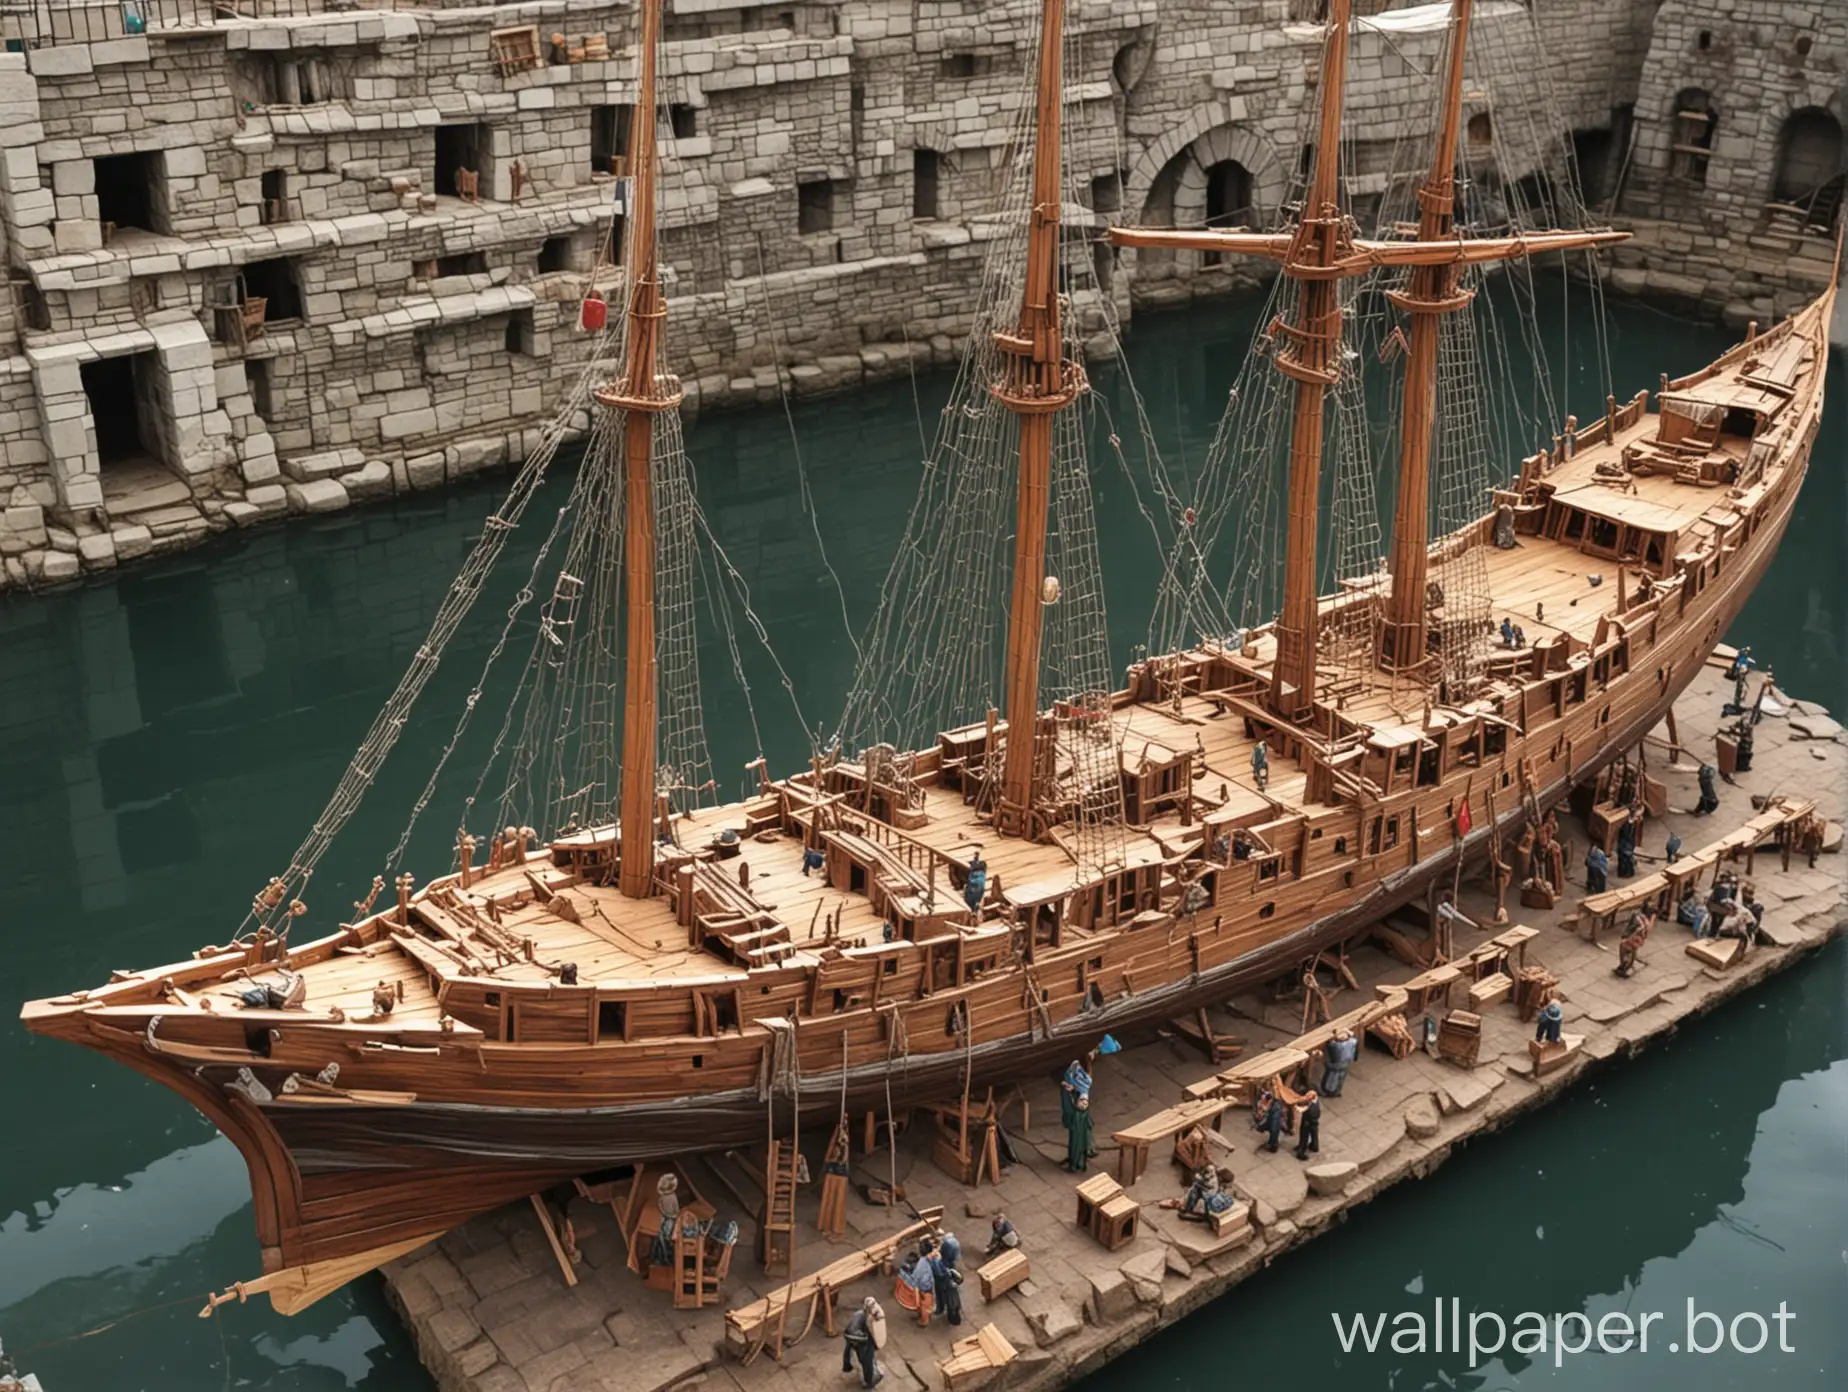 Medieval-Drydock-HalfFinished-Sailing-Ship-Construction